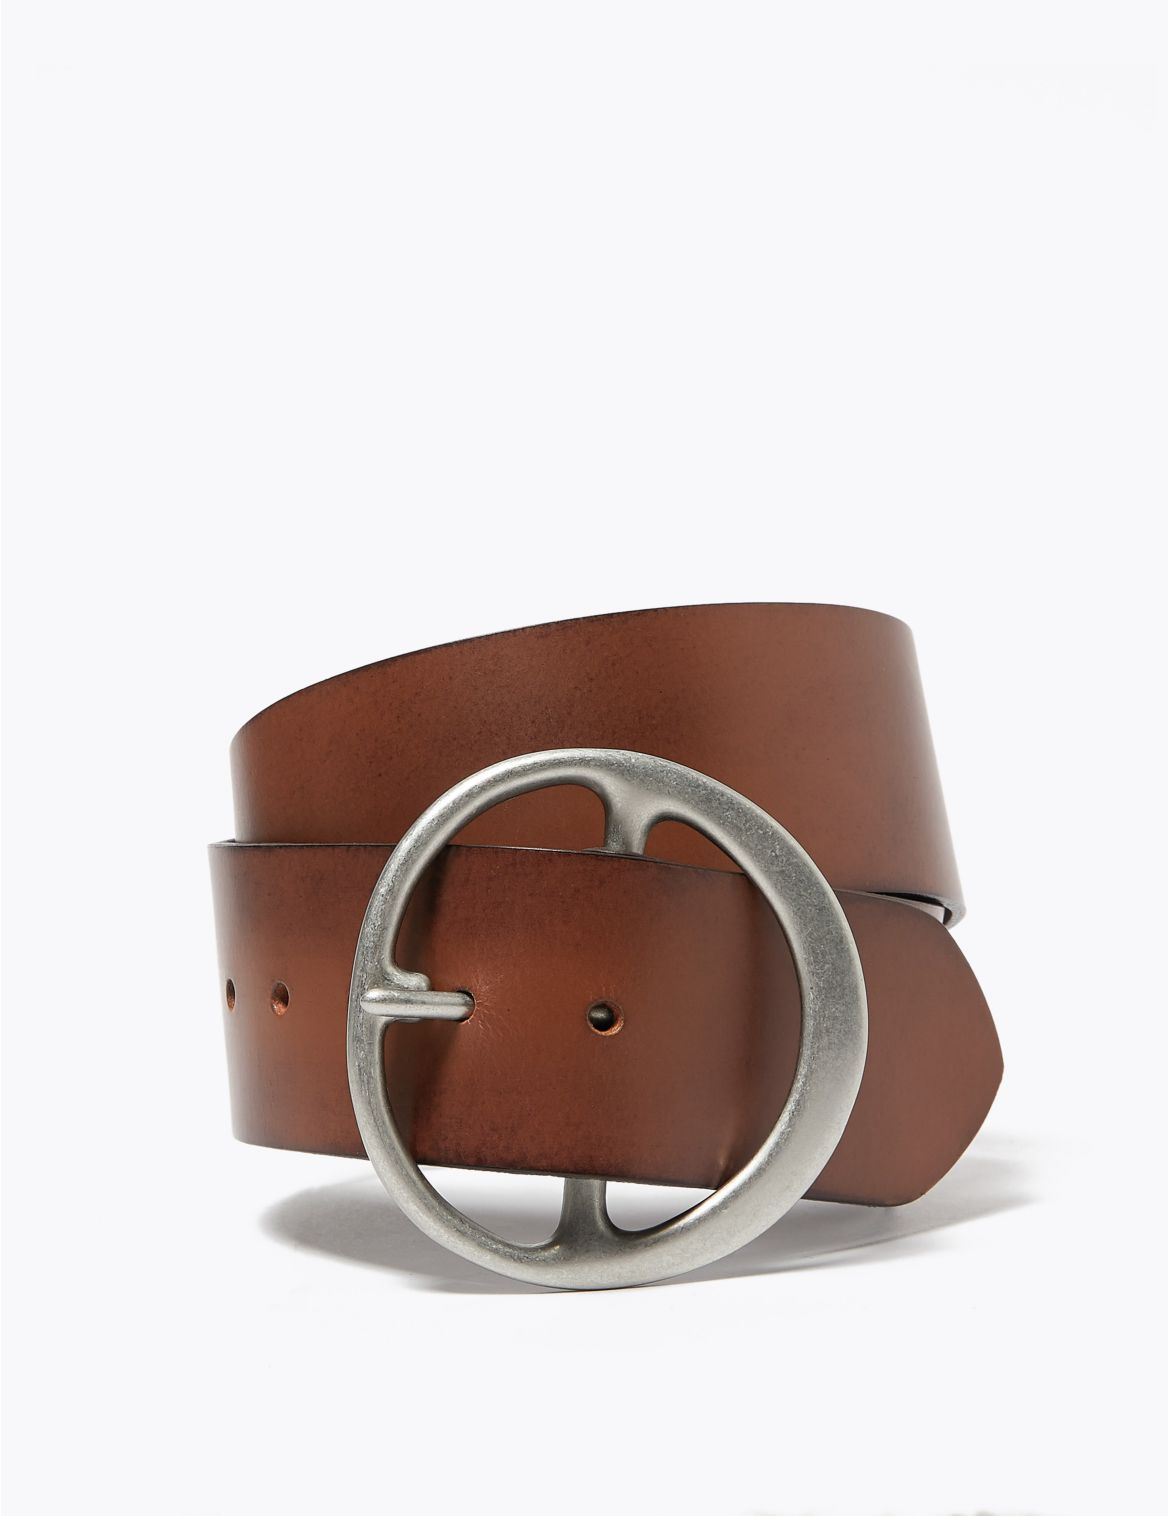 Leather Waist Belt brown